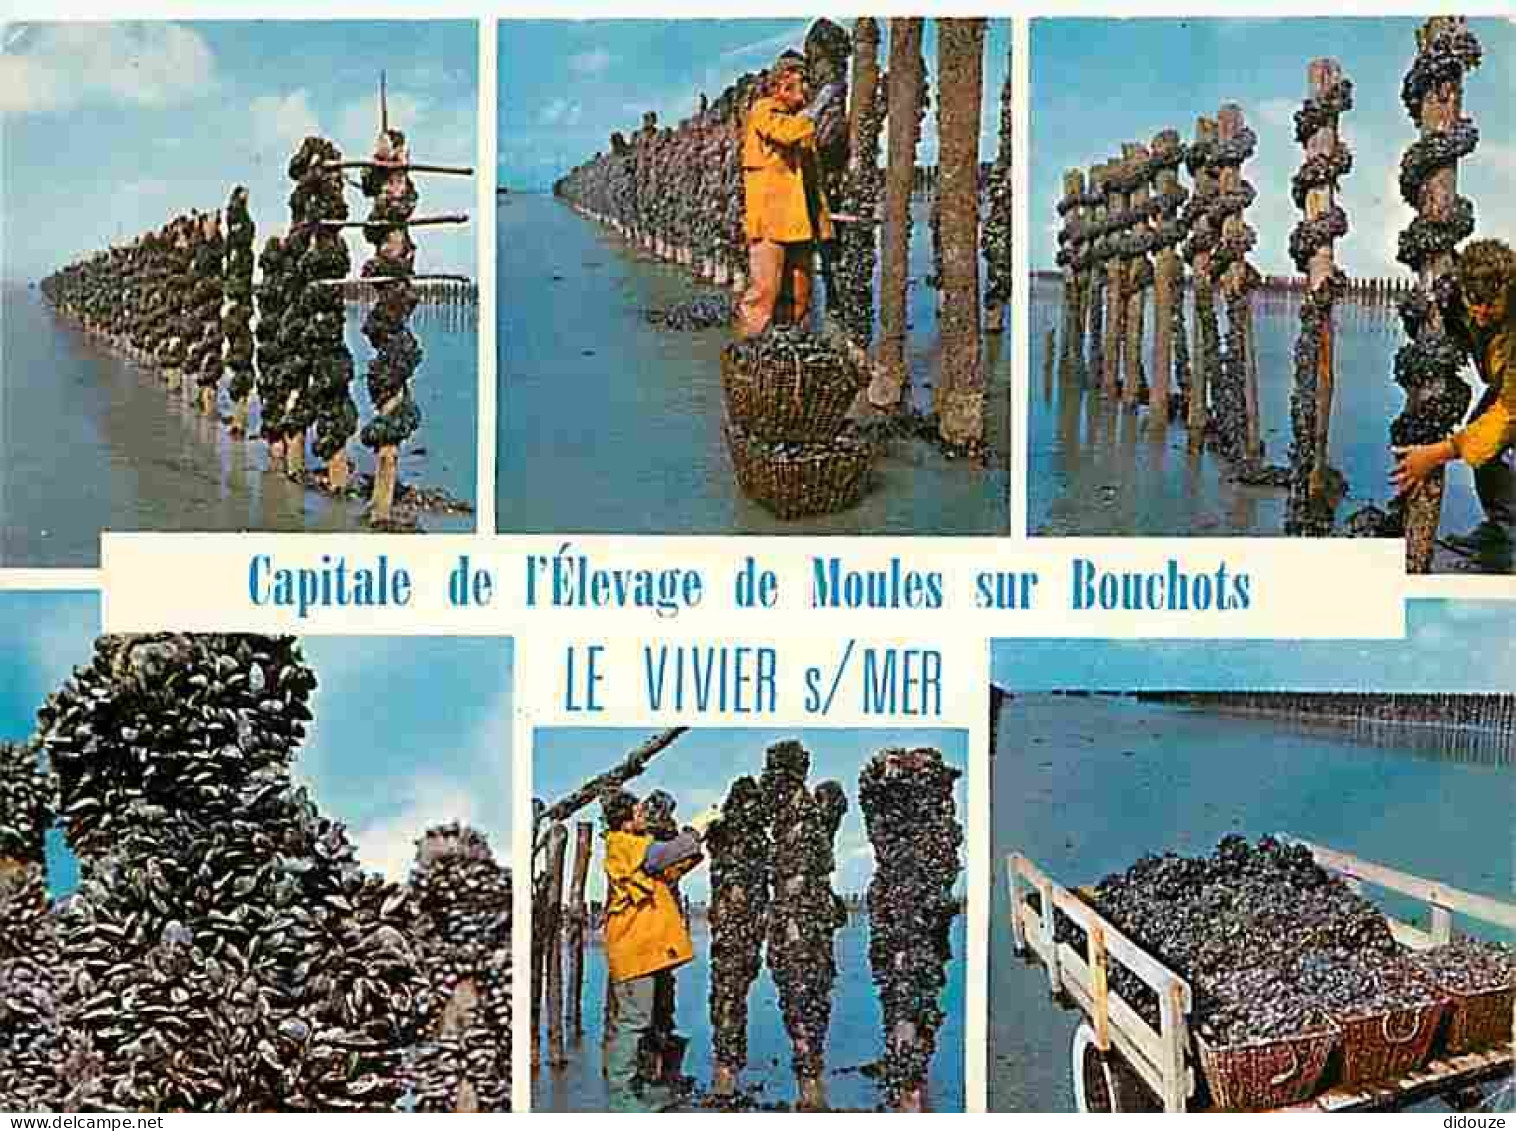 Metiers - Mytiliculture - Culture Des Moules - Mytilicultureur - Le Vivier Sur Mer - Capitale De L'èlevage Des Moules De - Visvangst